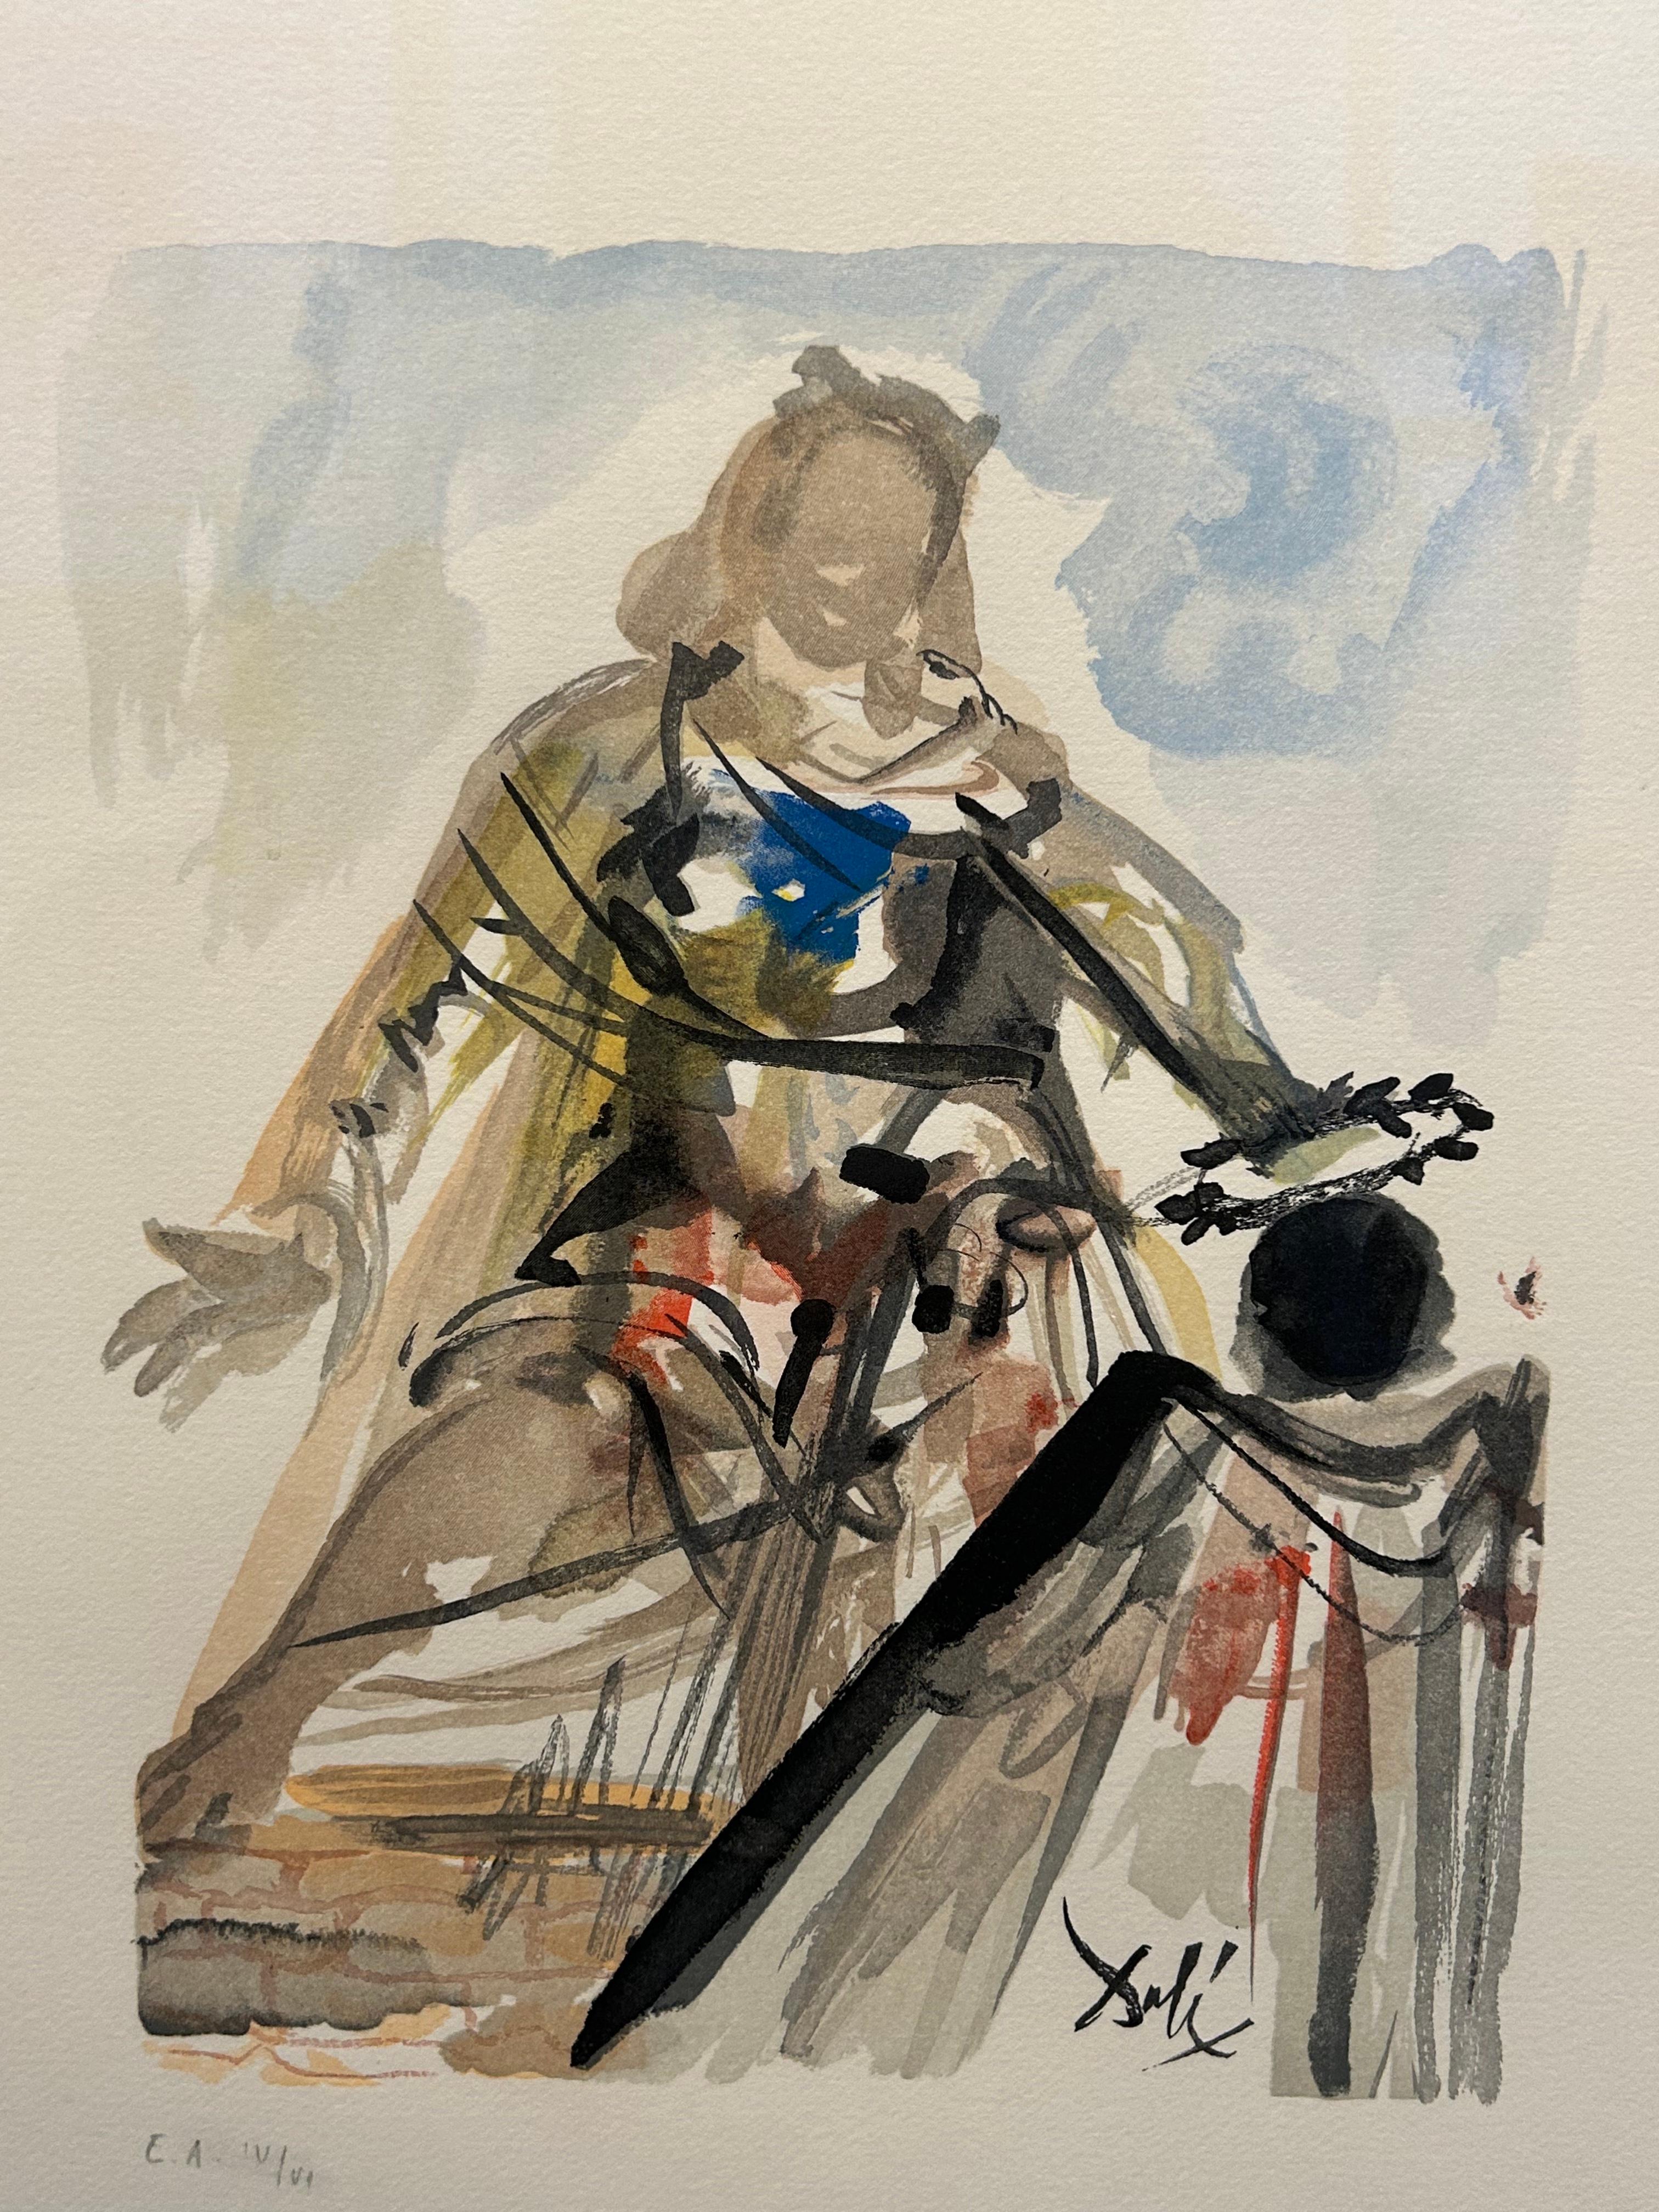 'On Voit cette Reine...' Farblithographie aus 'L'Art d'Aimer d'Ovide'. – Print von Salvador Dalí